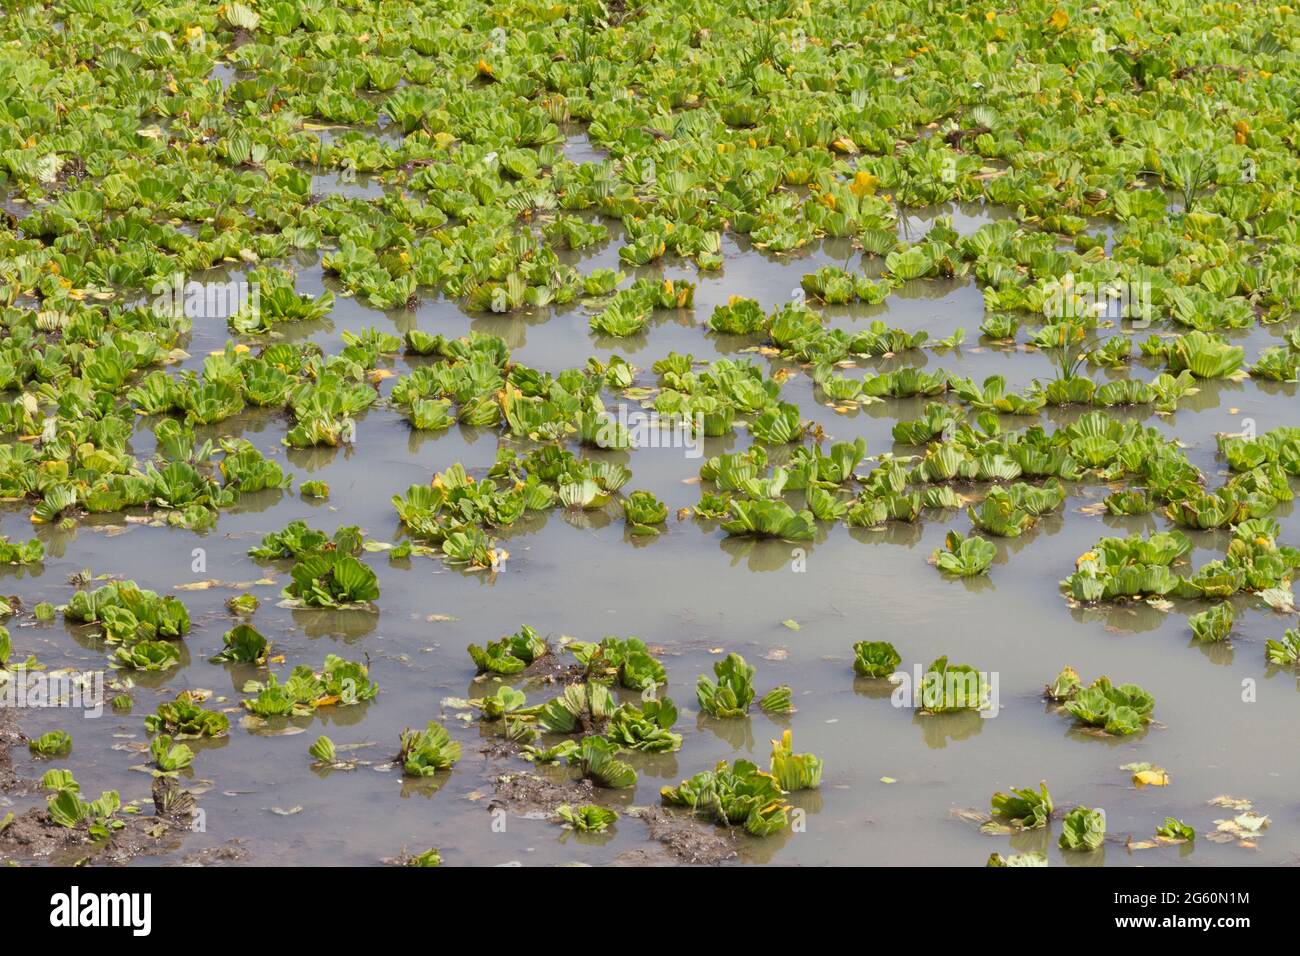 Una vista ravvicinata della lattuga d'acqua, Pistia stratiotes, che cresce su un lago. Foto Stock